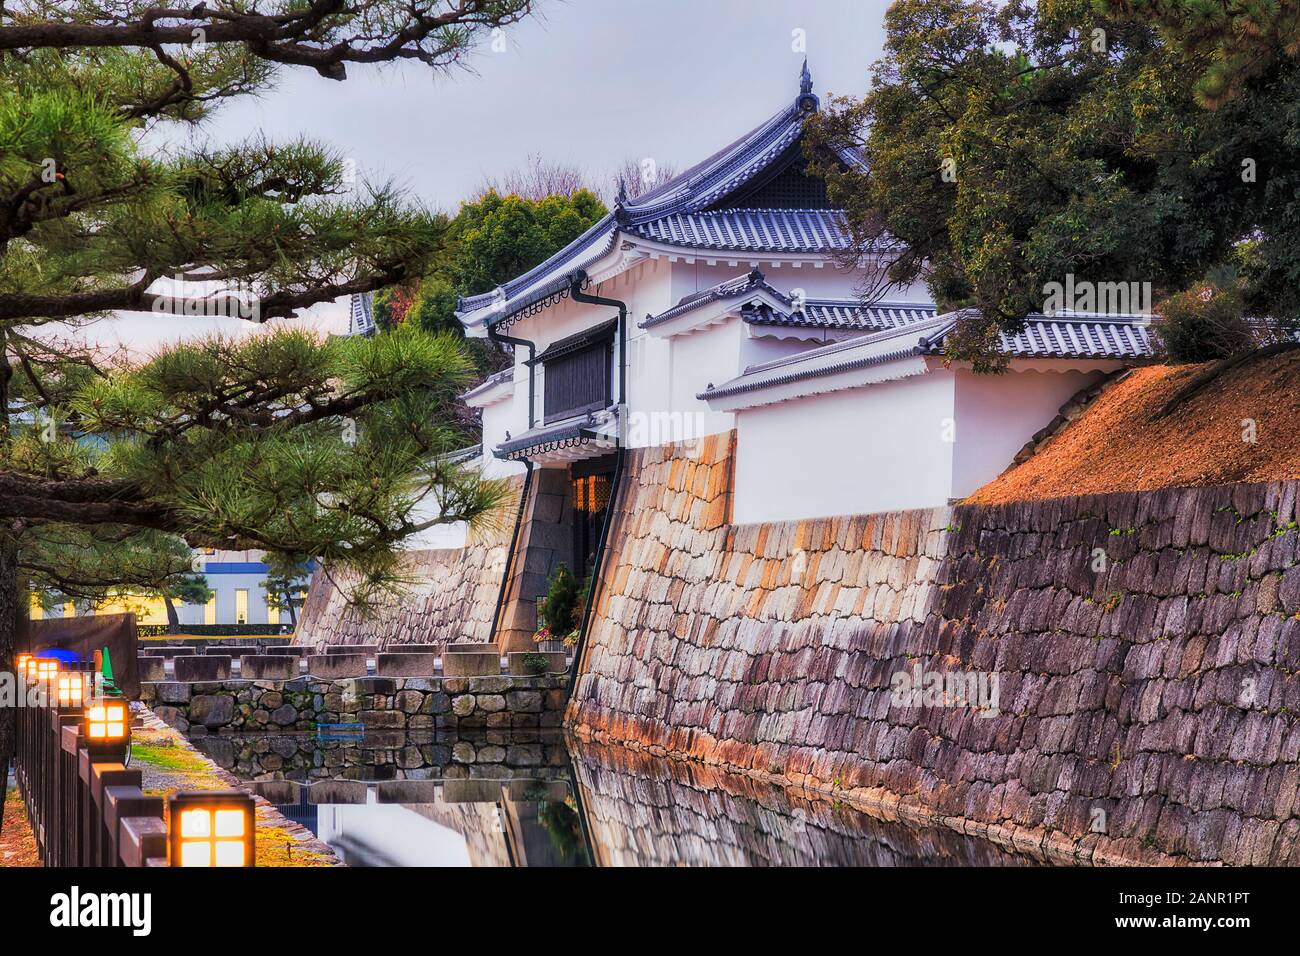 Tour Blanche et porte d'entrée de la caste dans la ville de Kyoto Nijo - Château historique du shogun local actuel - parc, jardin et du patrimoine site entouré de sto Banque D'Images